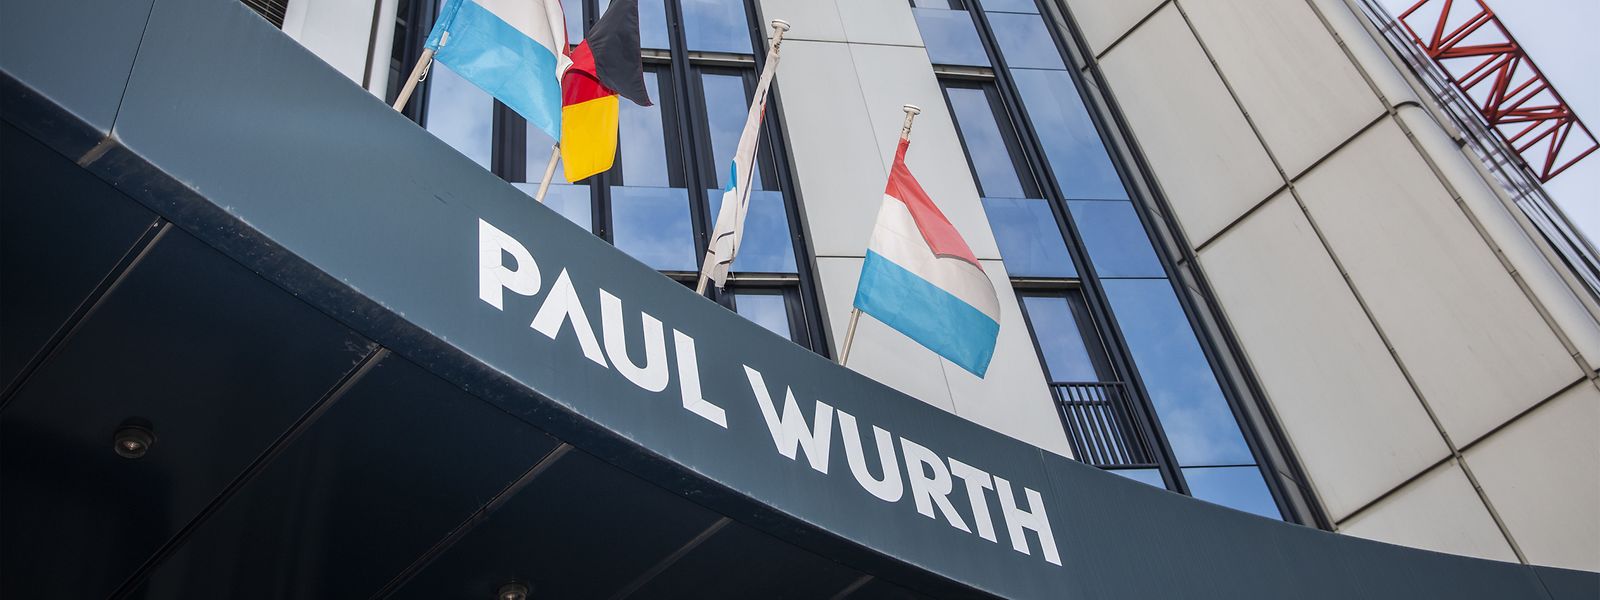 Die deutsche SMS group hat am Mittwoch das Traditionsunternehmen Paul Wurth komplett übernommen. 